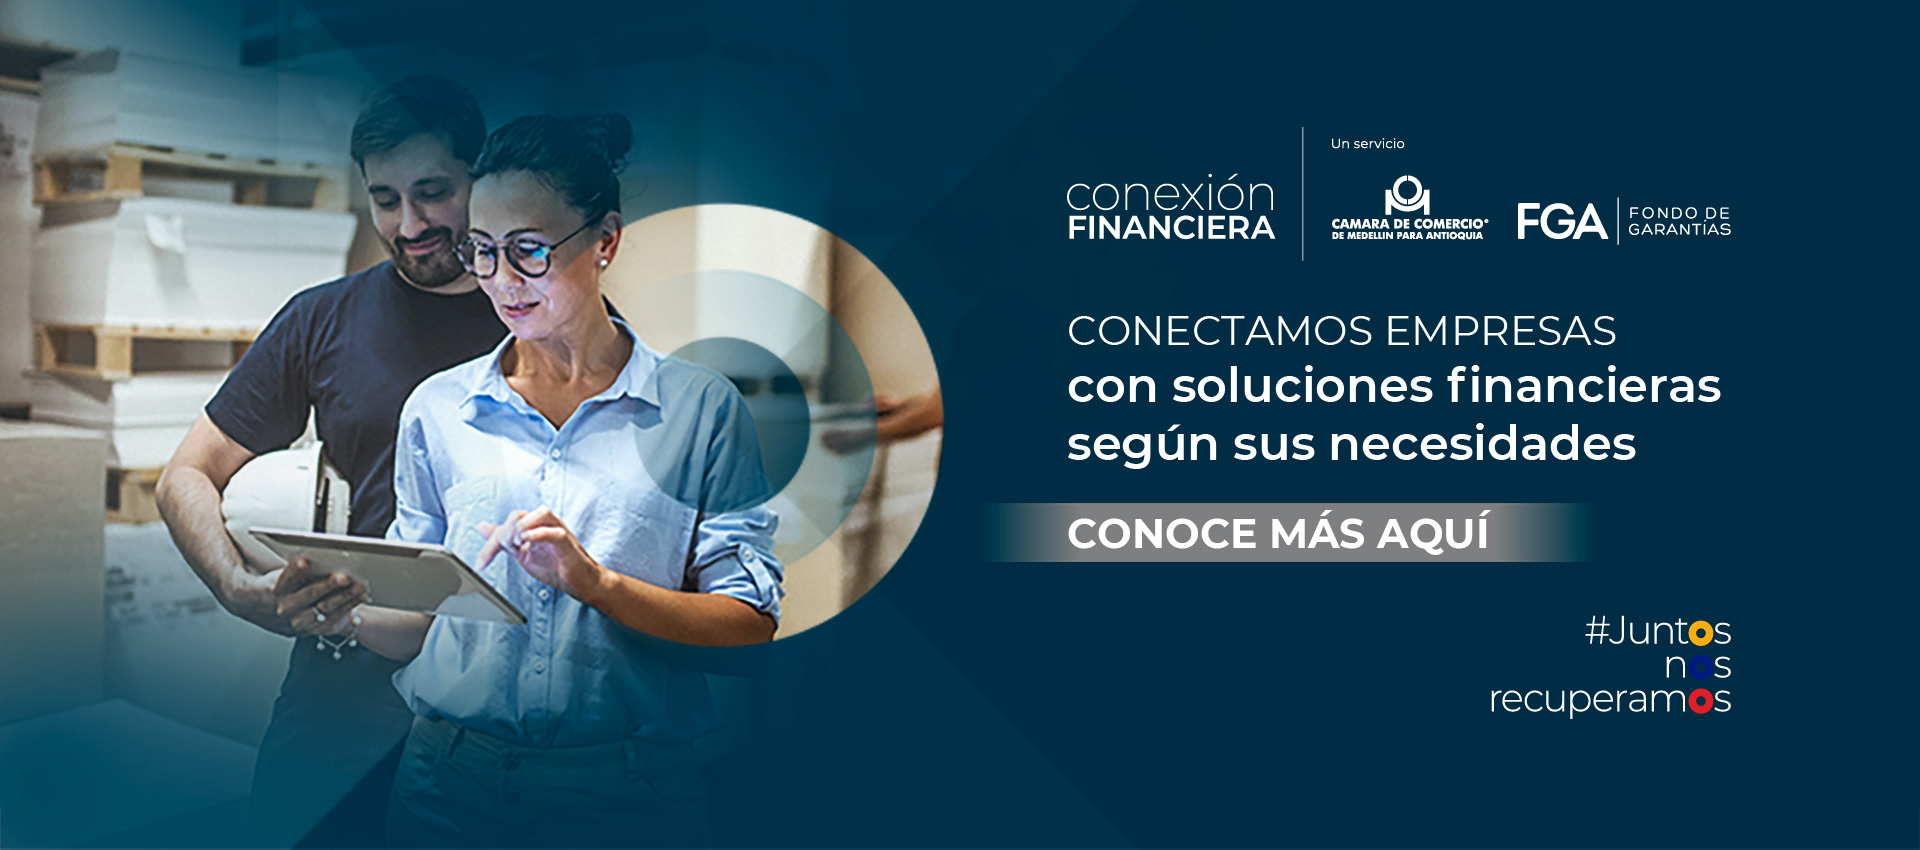 Conexión Financiera, un proyecto con mercado para las Fintech.